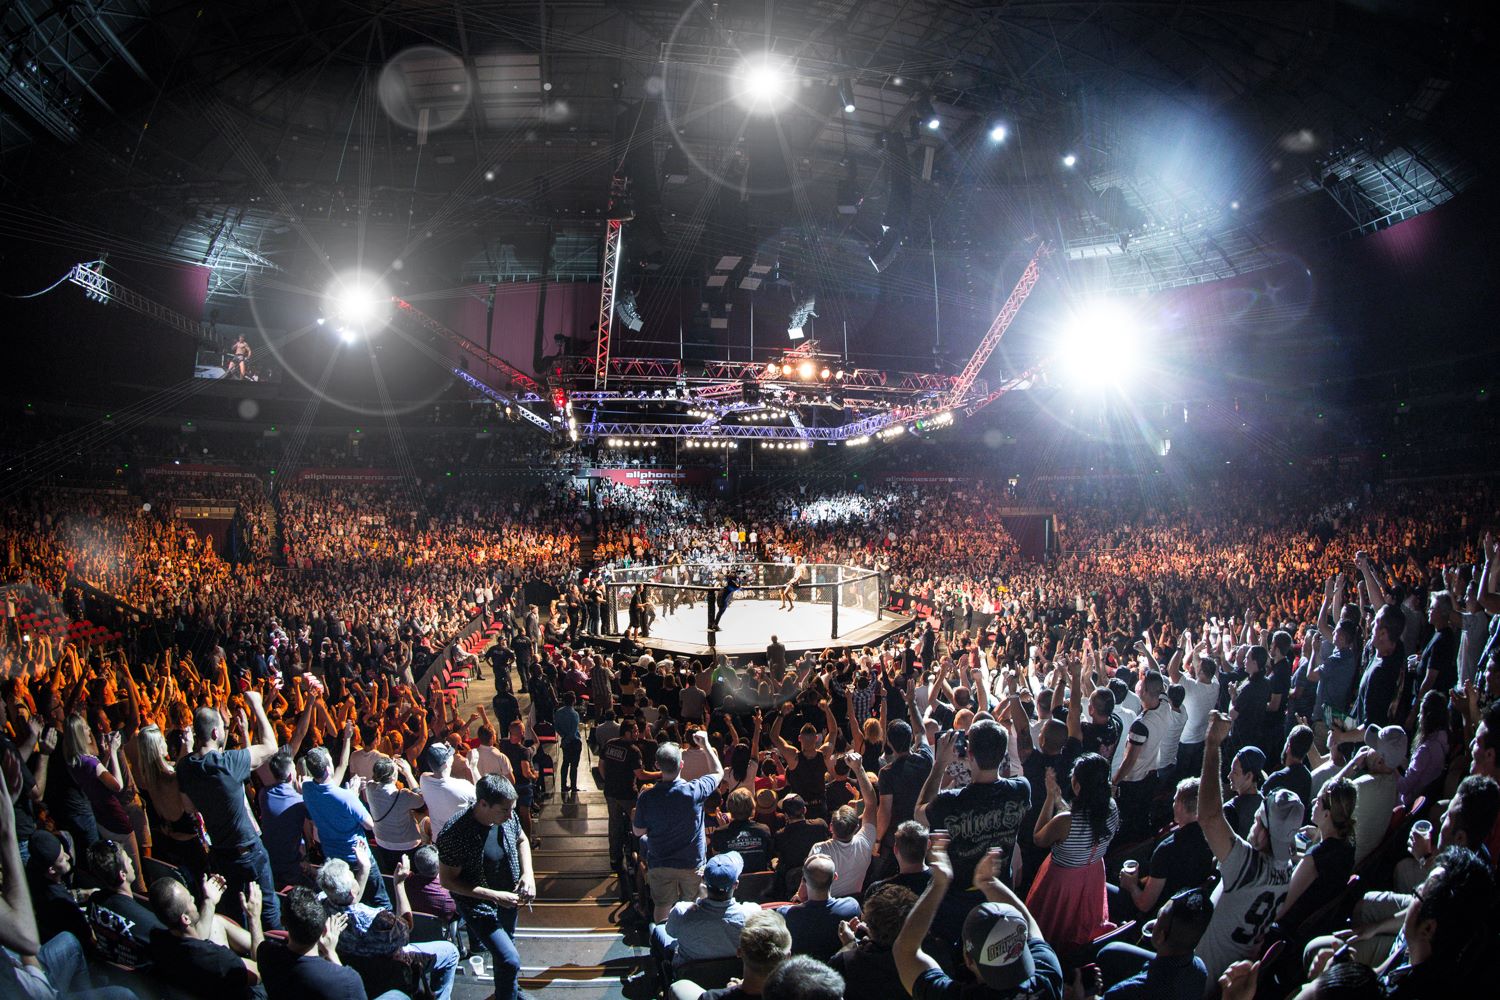 Eventos de MMA tem intensificado seus trabalhos nas redes sociais - Divulgação